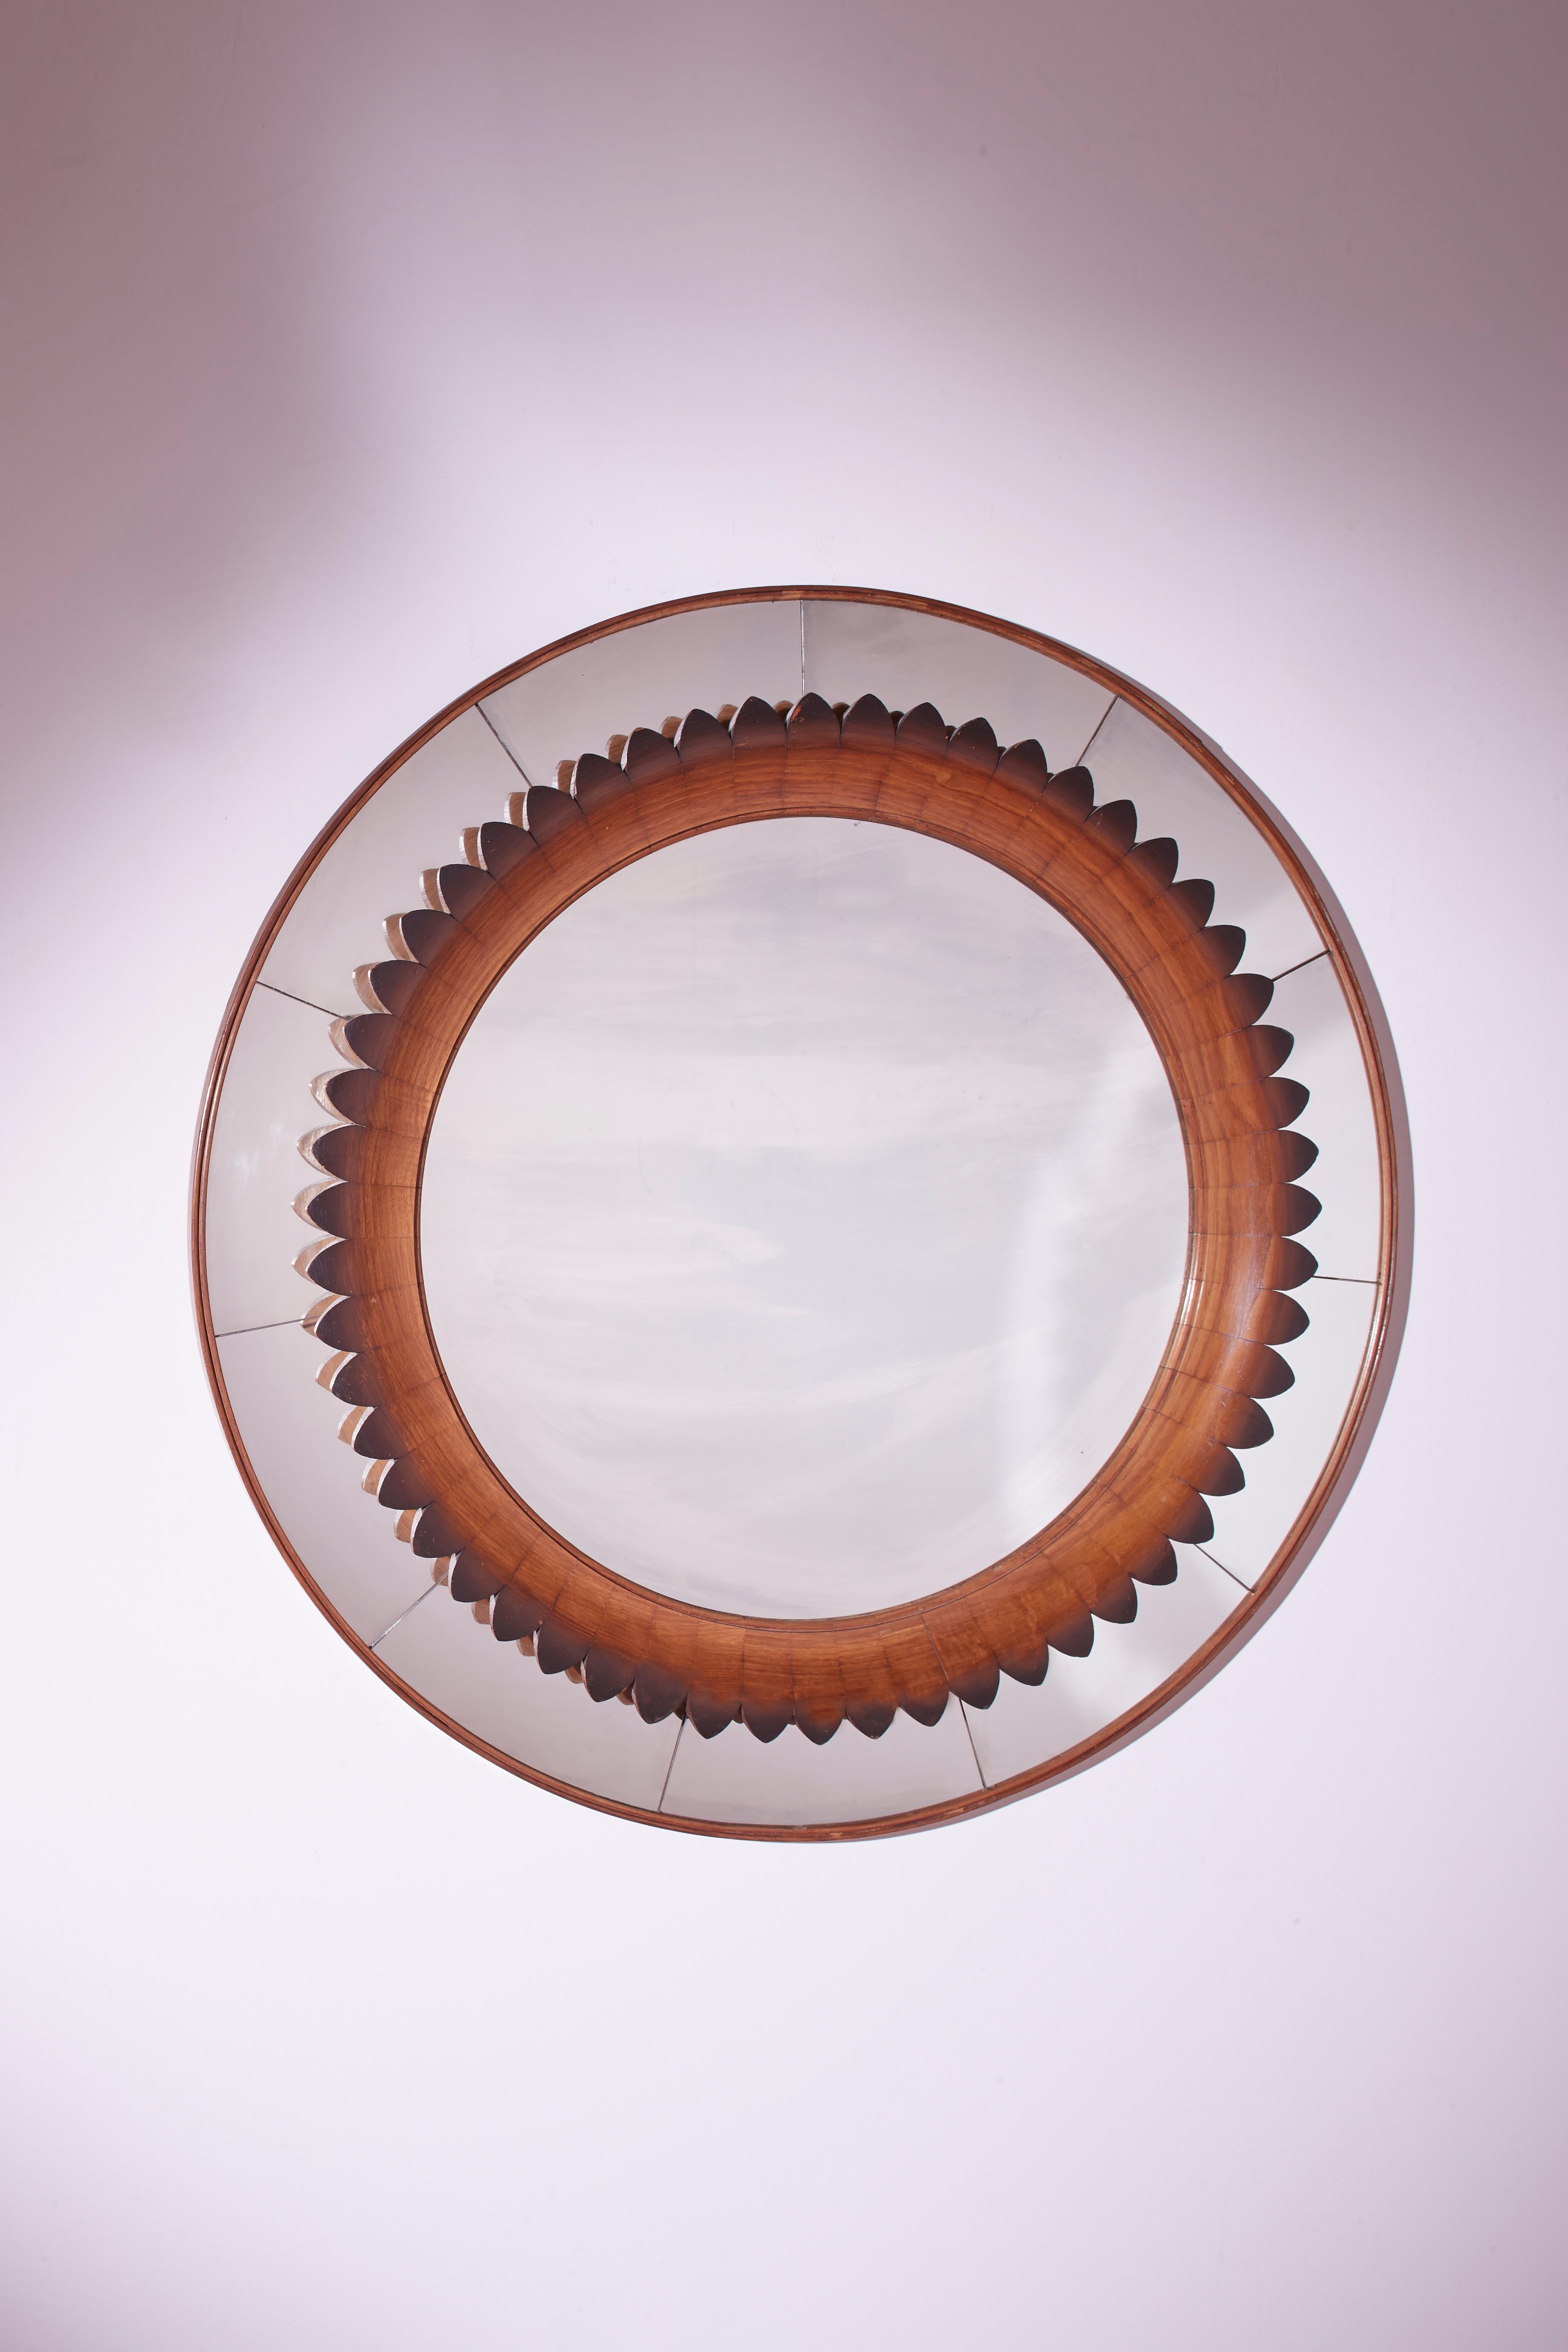 Un magnifique miroir rond encadré de bois de noyer représente la maîtrise de l'artisanat italien du Fratelli Marelli des années 1950. Les inserts modulaires en bois qui composent le cadre évoquent l'image de pétales de fleurs ou de rayons de